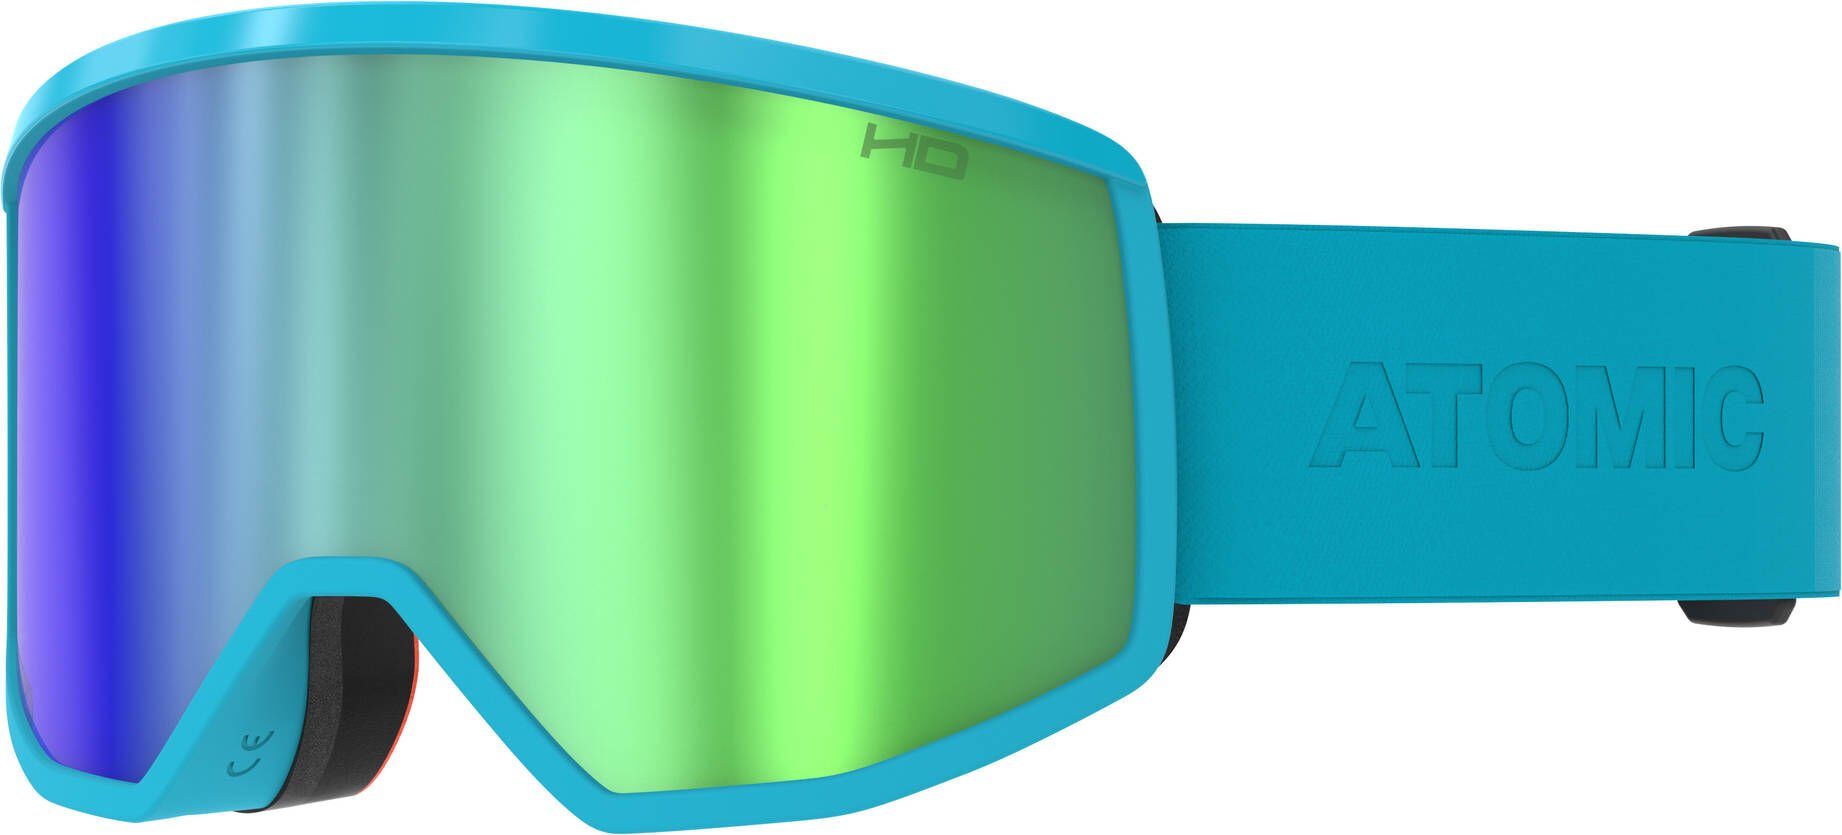 Herren HD TEAL Skibrille FOUR BLUE Atomic Skibrille